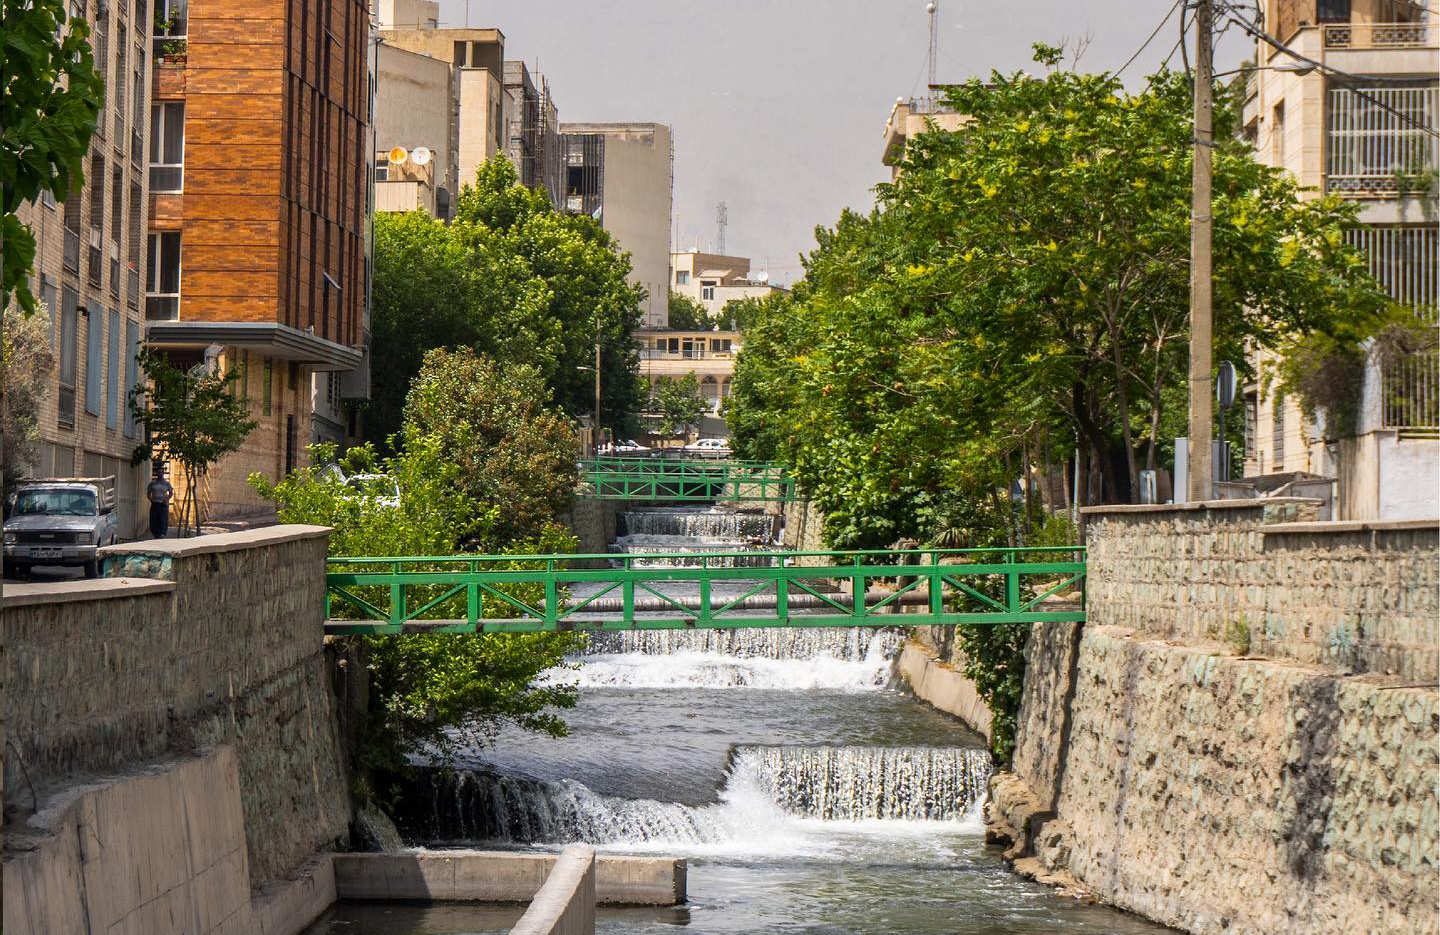 این خیابان قدیمی تهران قبلا مقر فرماندهی ساواک بود